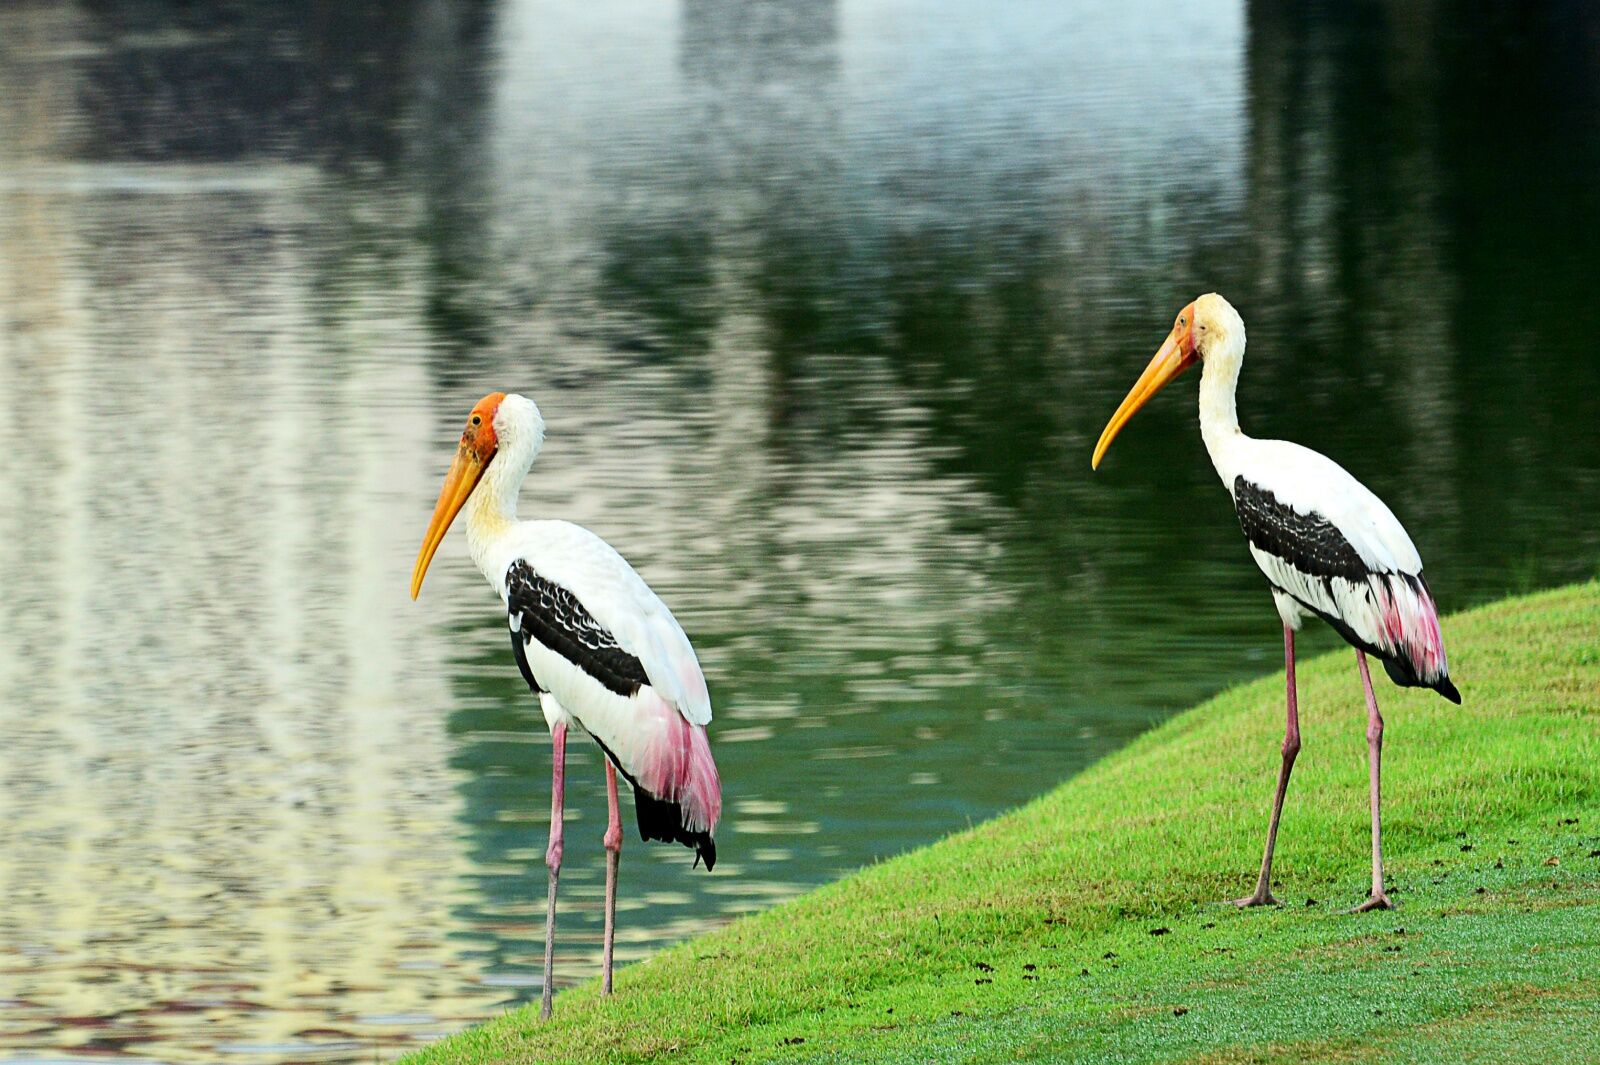 audubon golf courses - birds near a pond